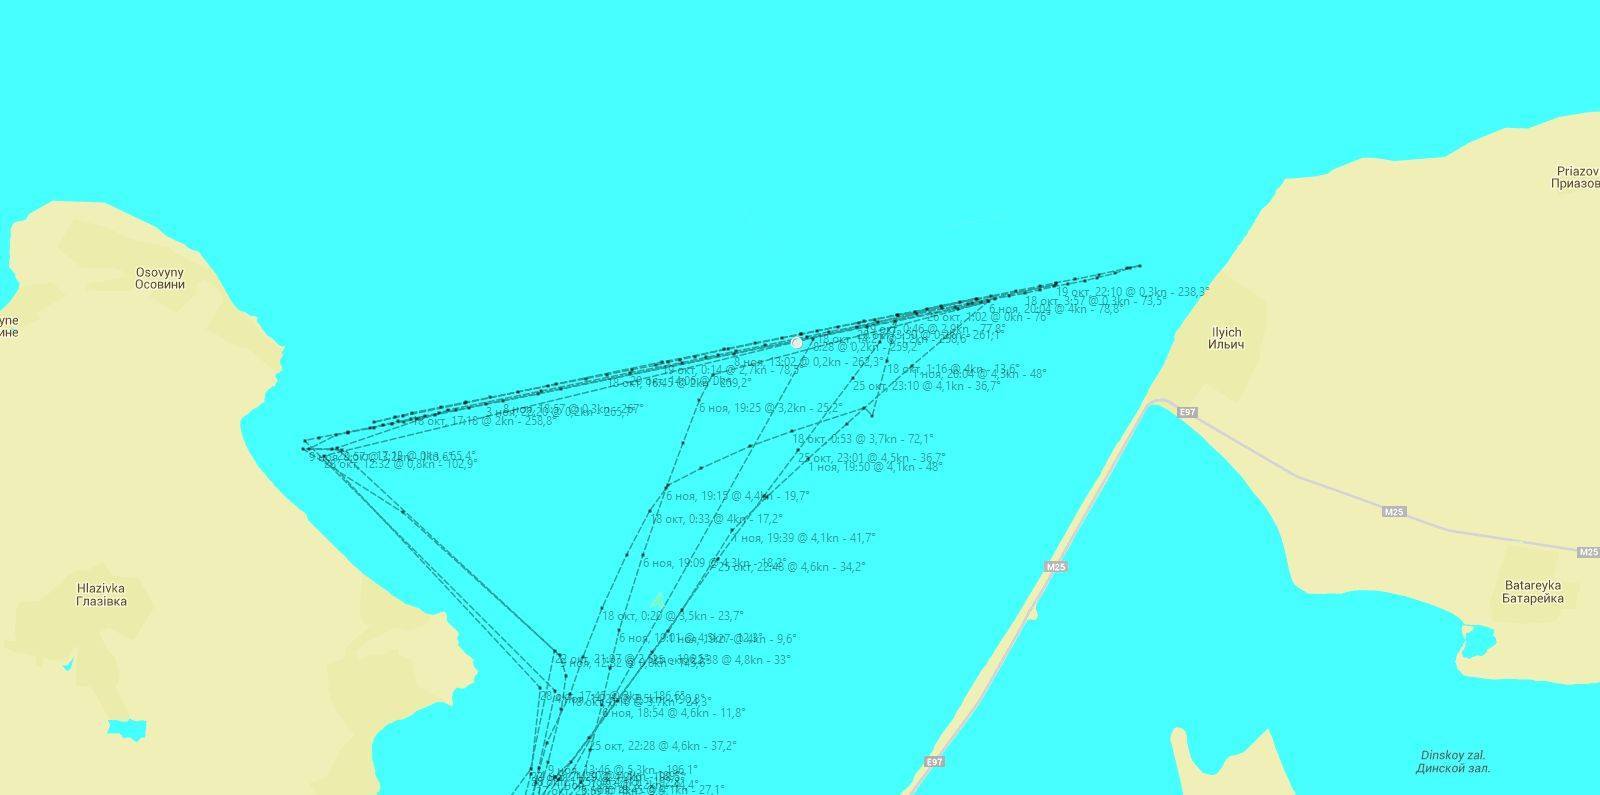 Мысы керченского пролива. Течения в Керченском проливе. Направление течения в Керченском проливе. Энергомост в Крым на карте.